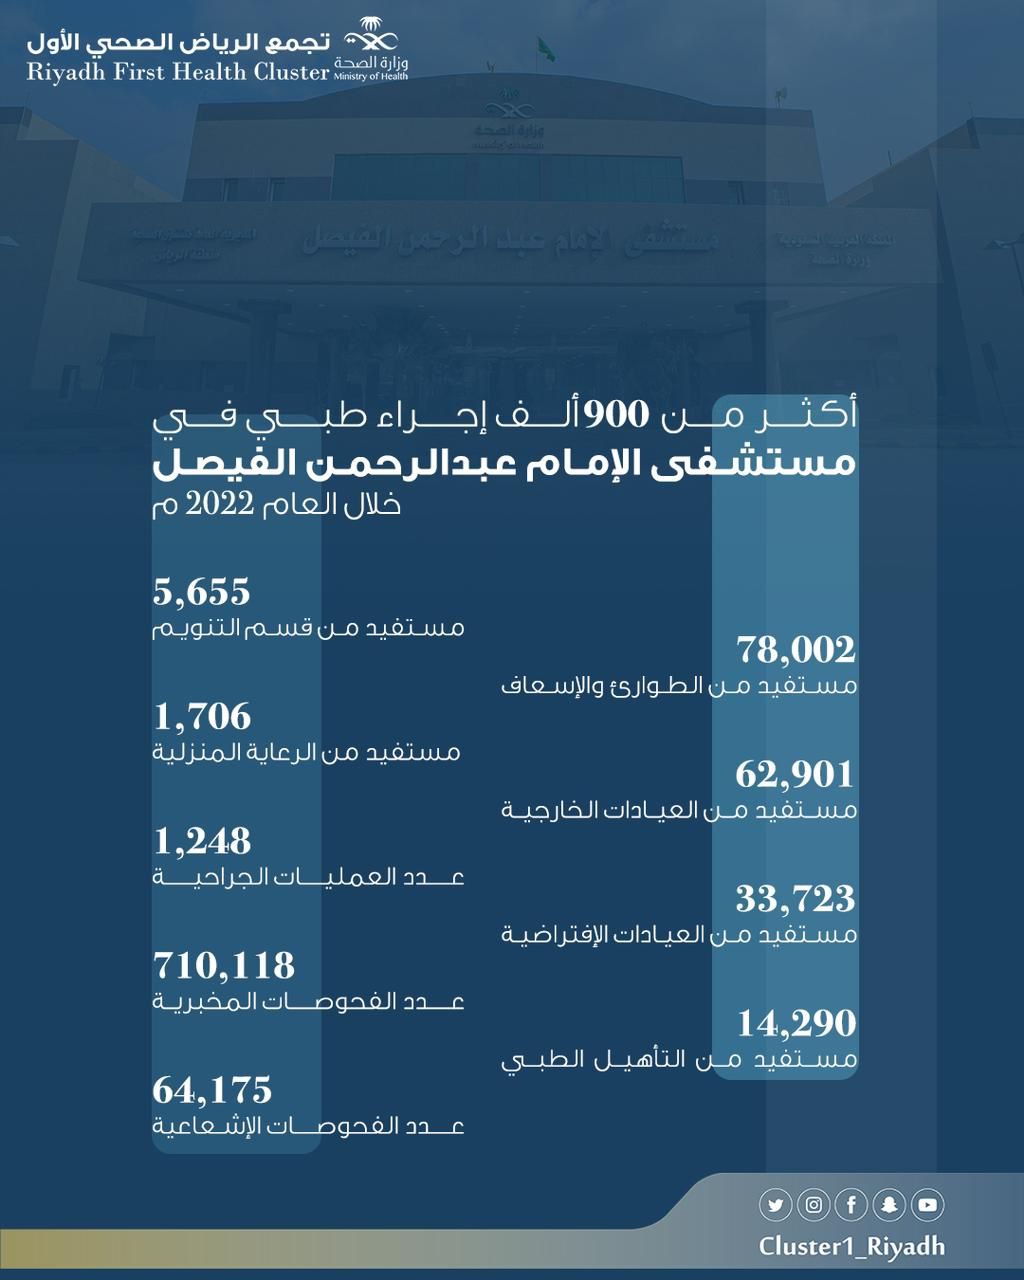 أكثر من 900 ألف إجراء طبي في مستشفى الإمام الفيصل